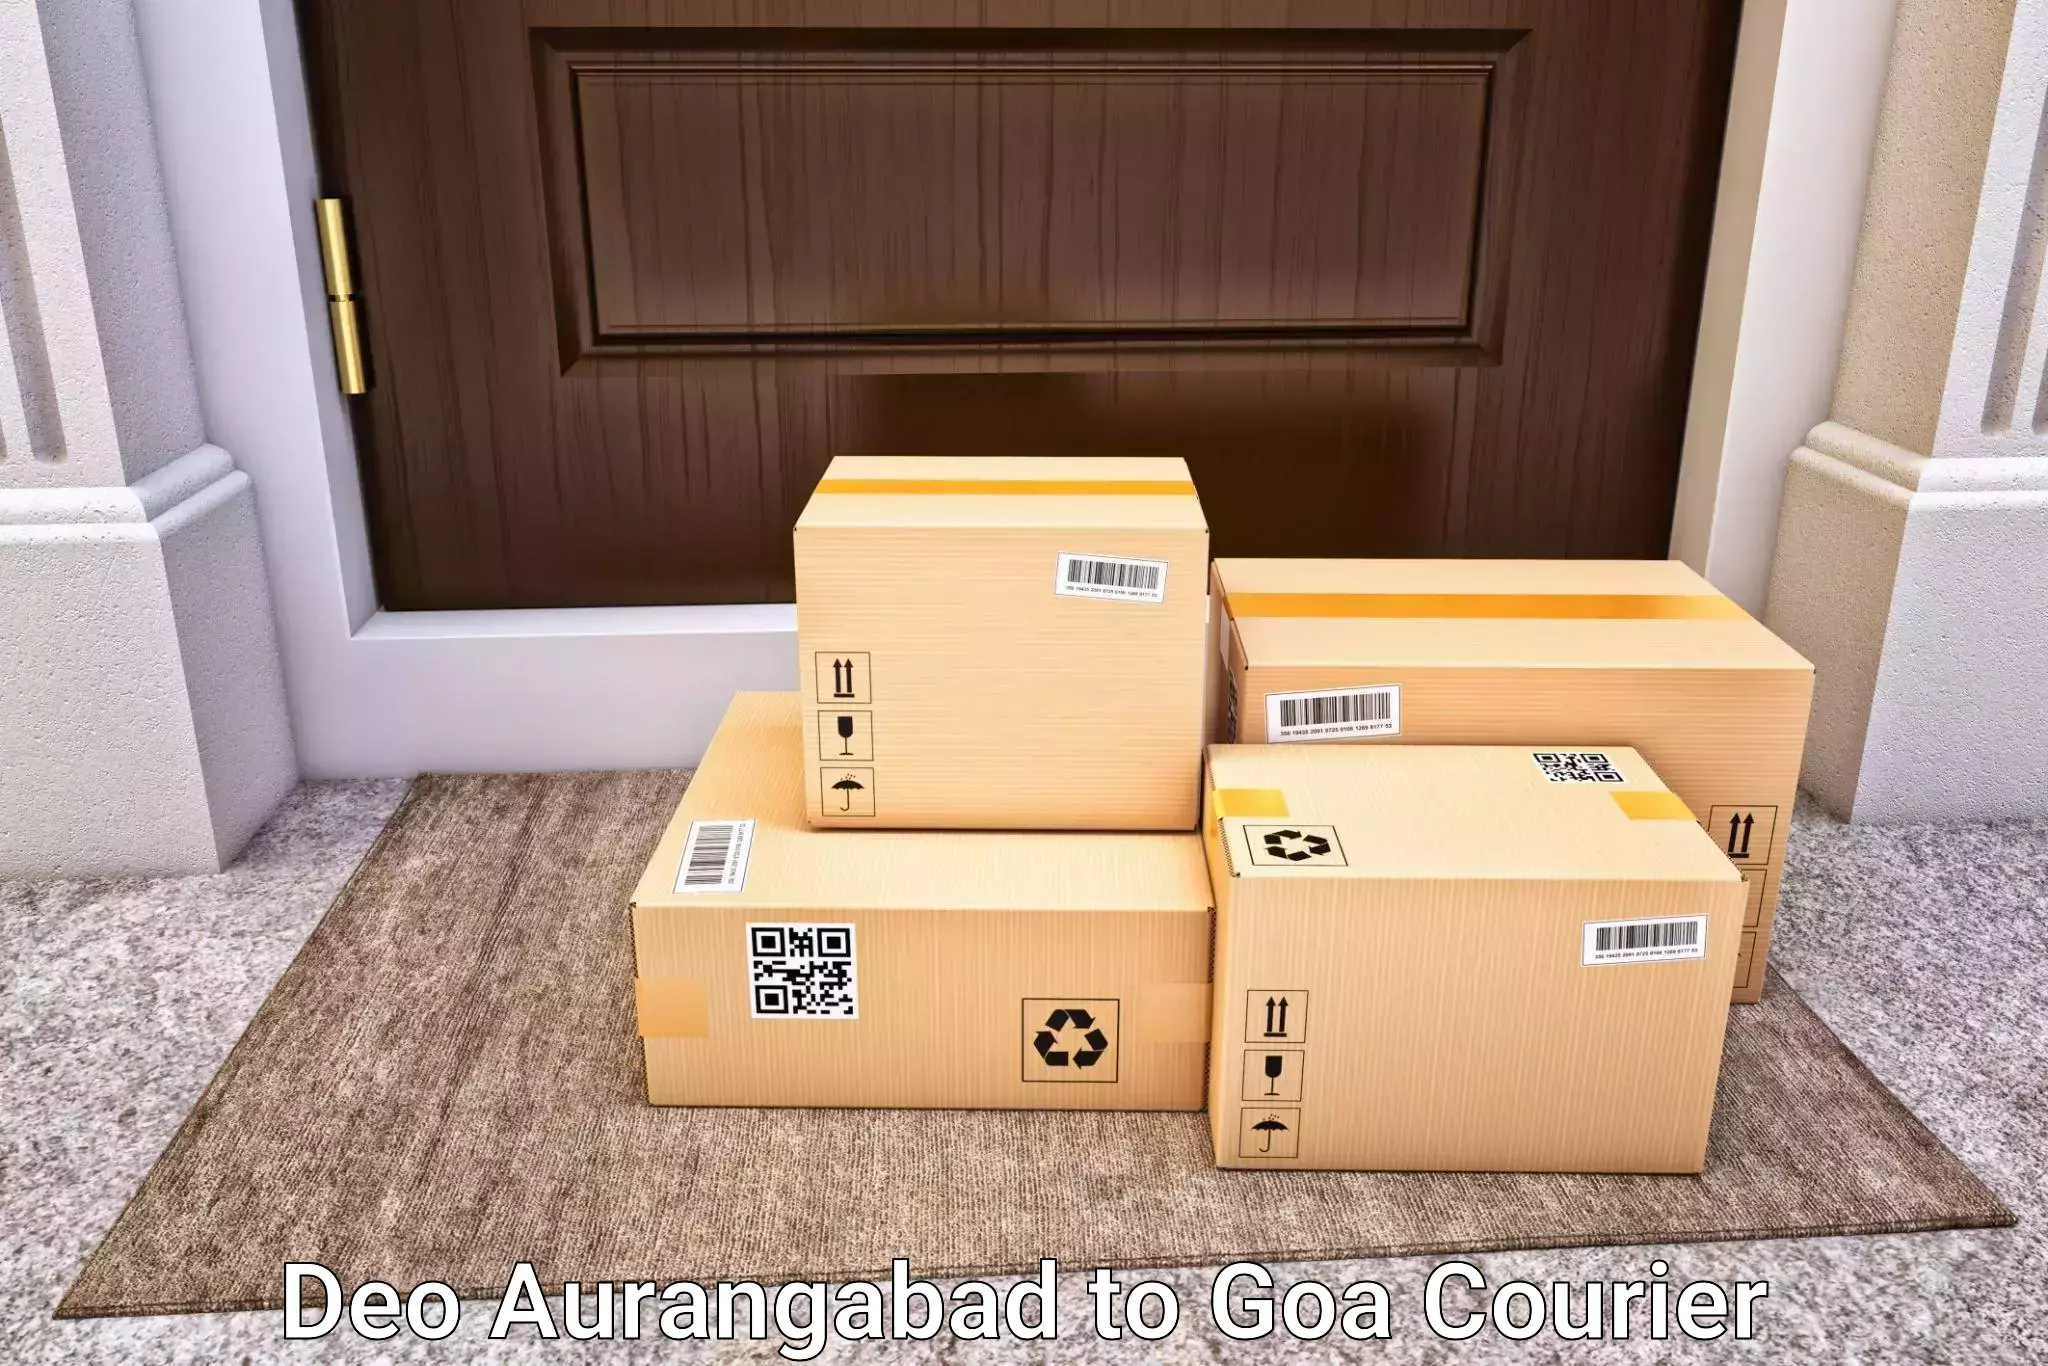 Customized luggage delivery Deo Aurangabad to Vasco da Gama